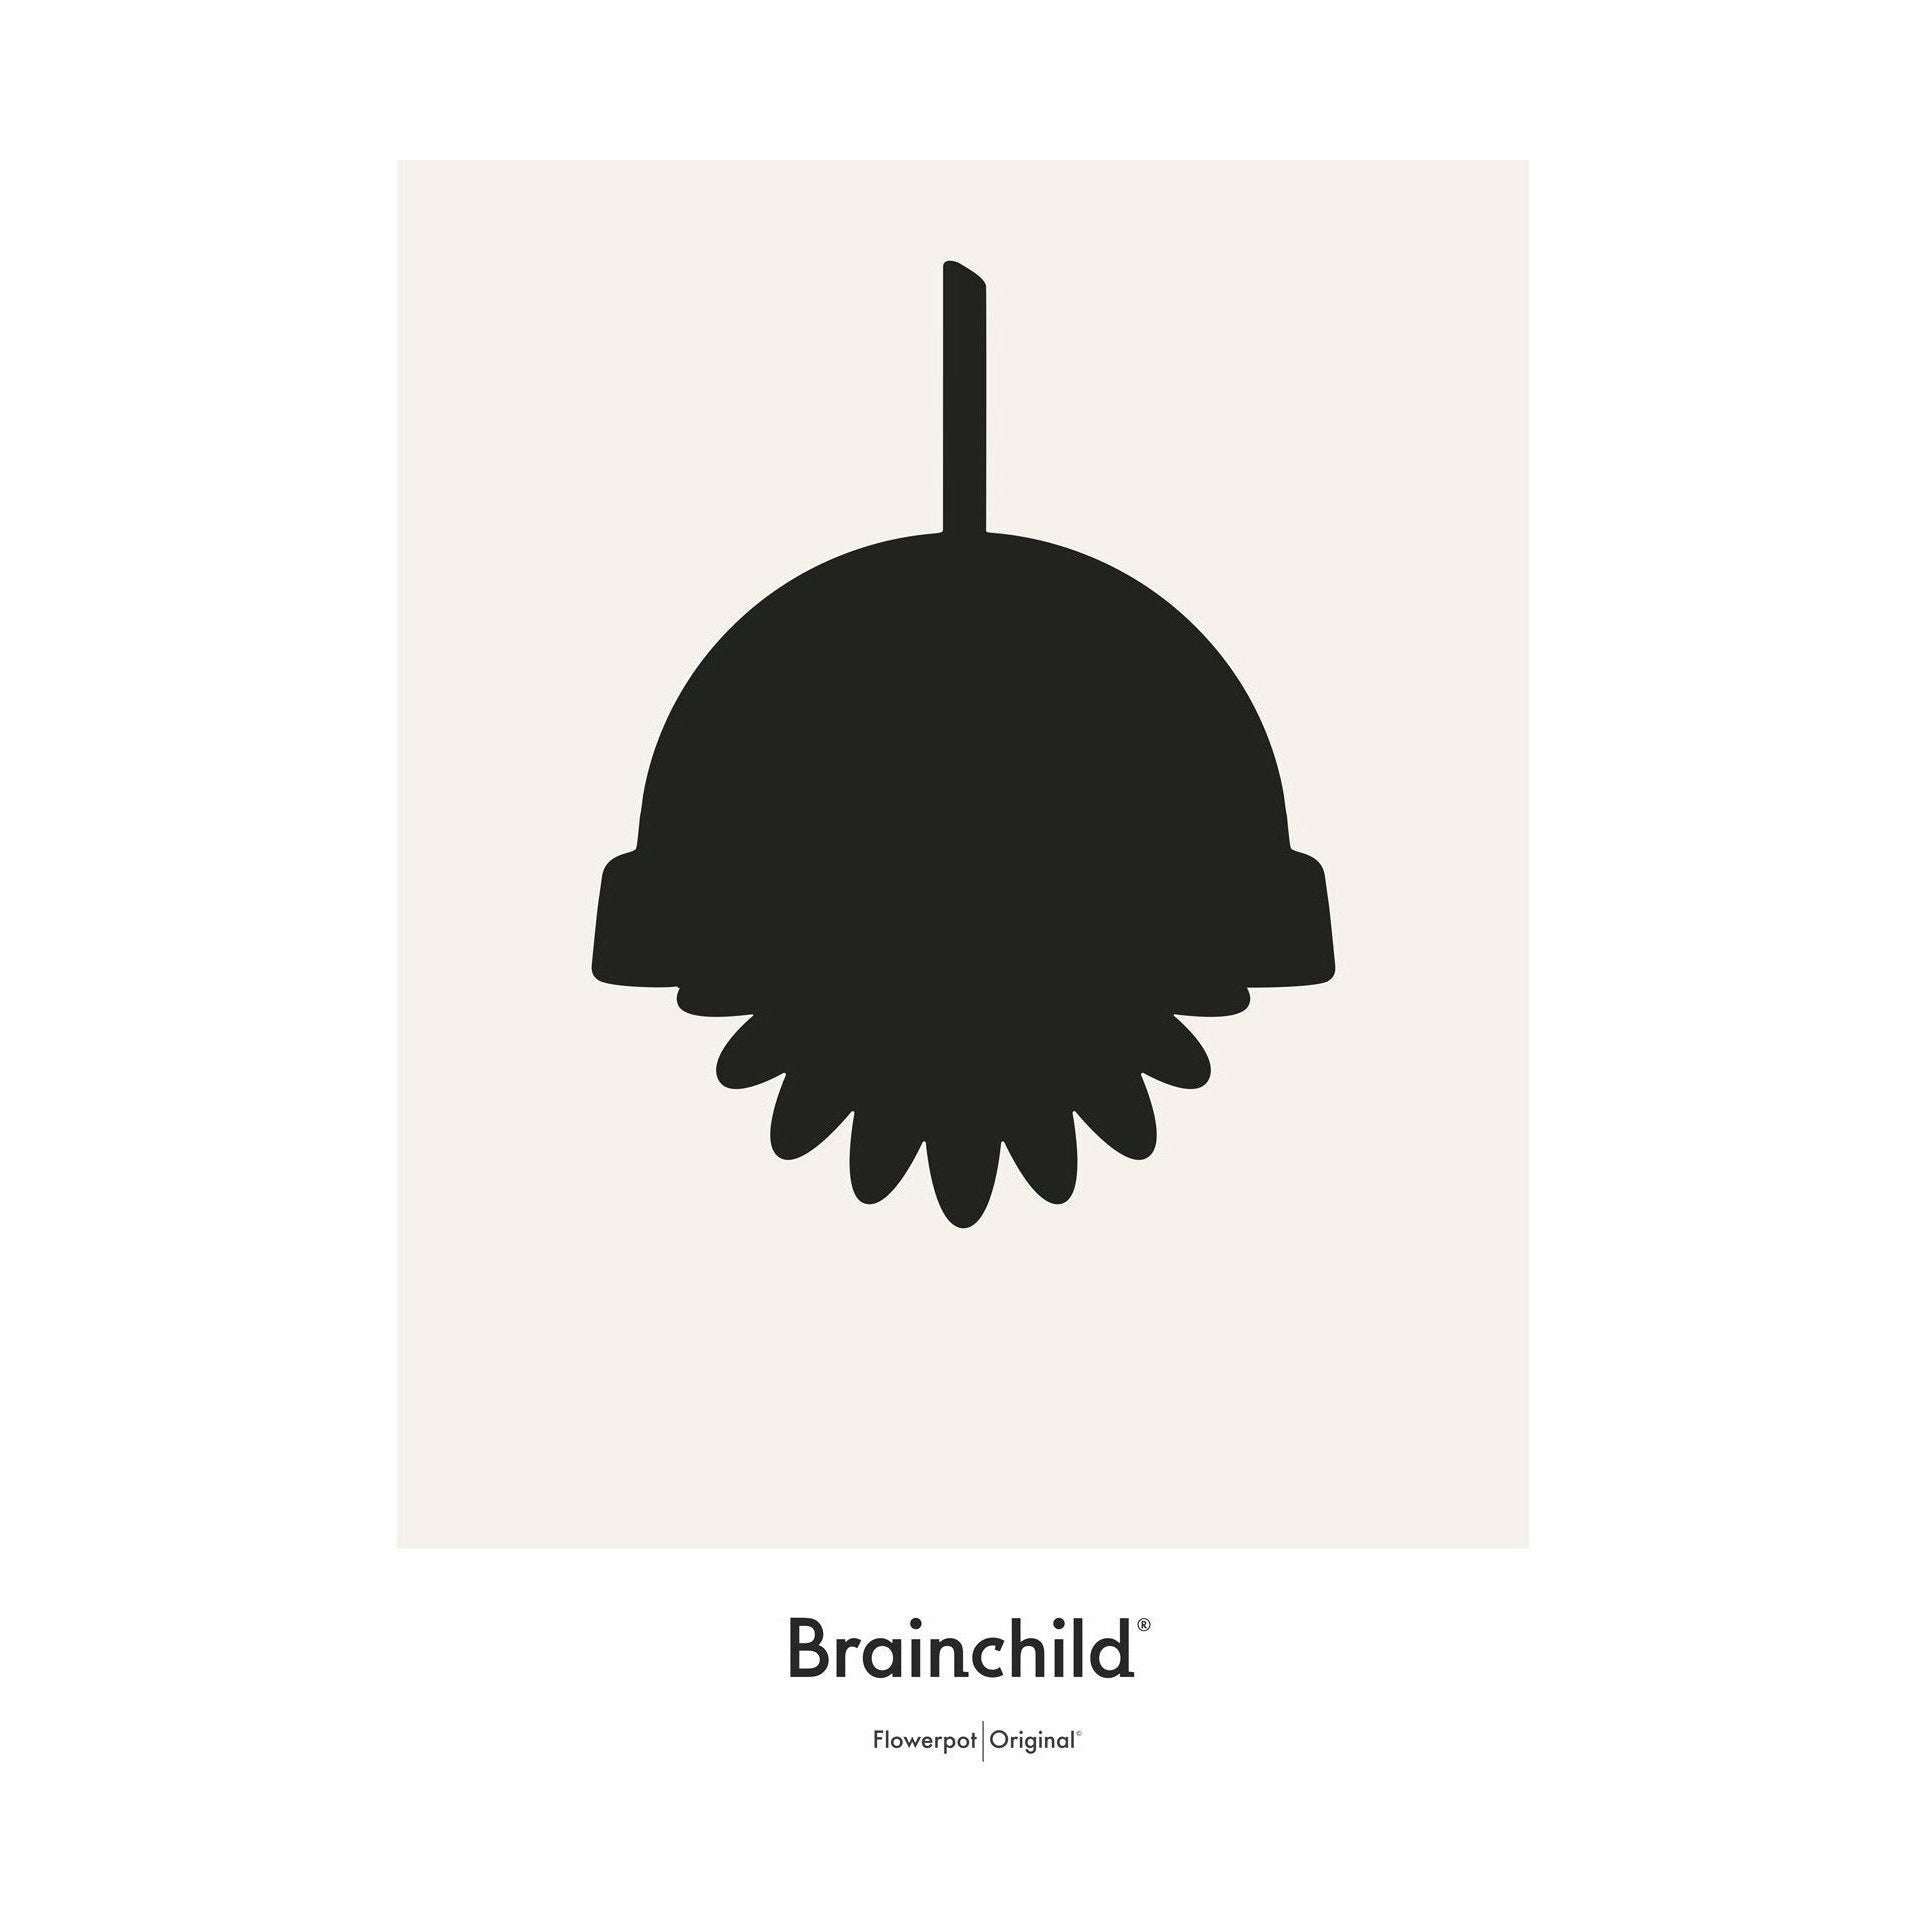 Plakát ikony Brainchild Flowerpot Design bez rámu A5, šedá